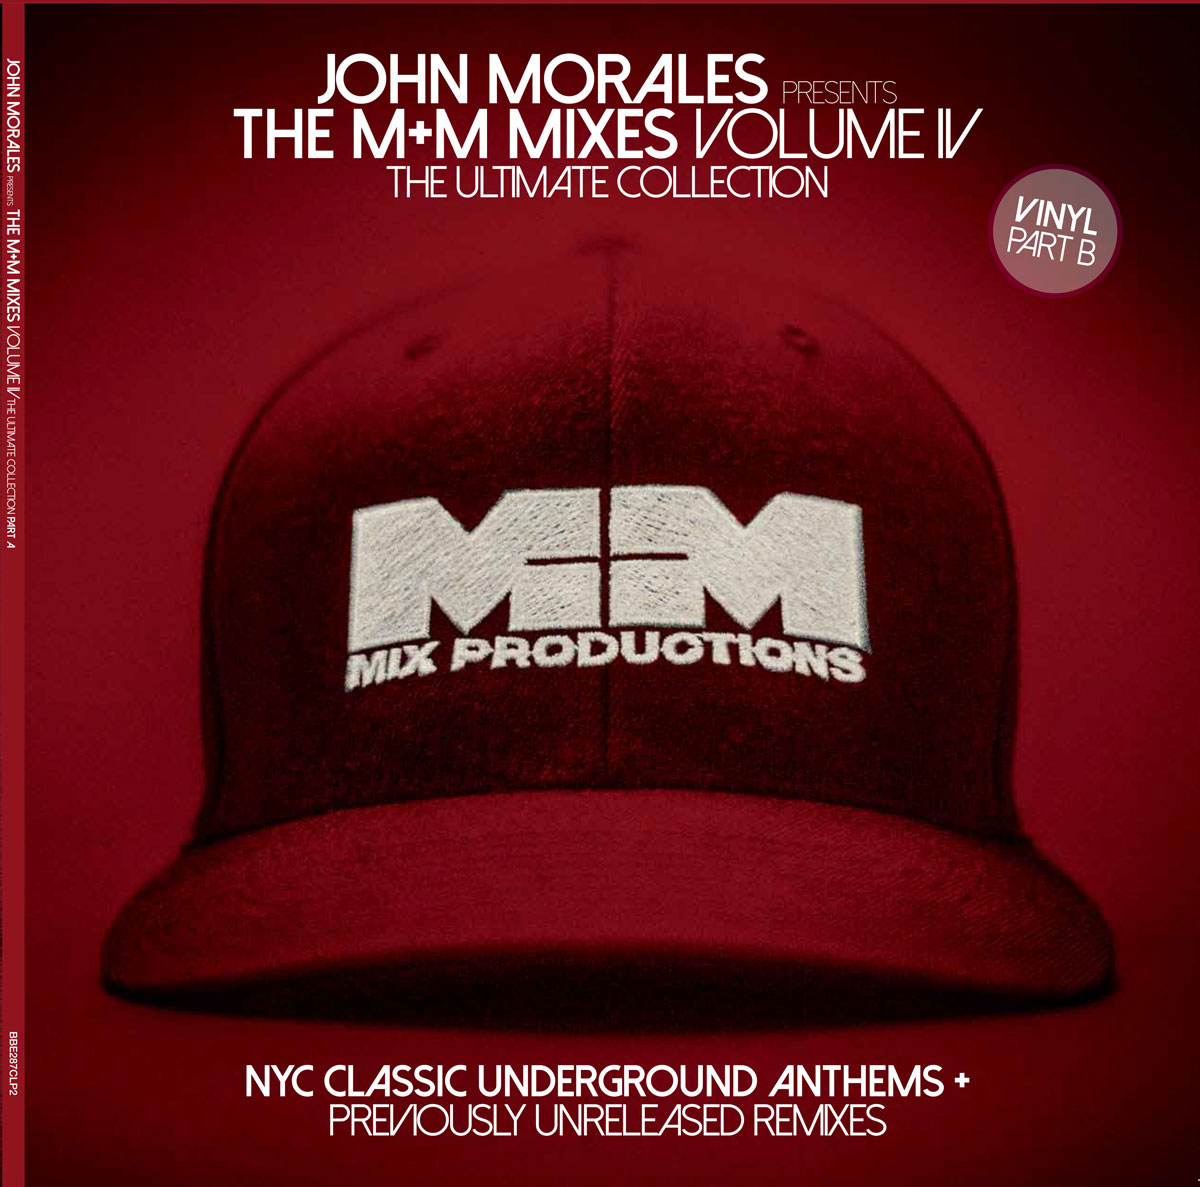 The M+M Mixes Vol. 4 Vinyl LP – Part B